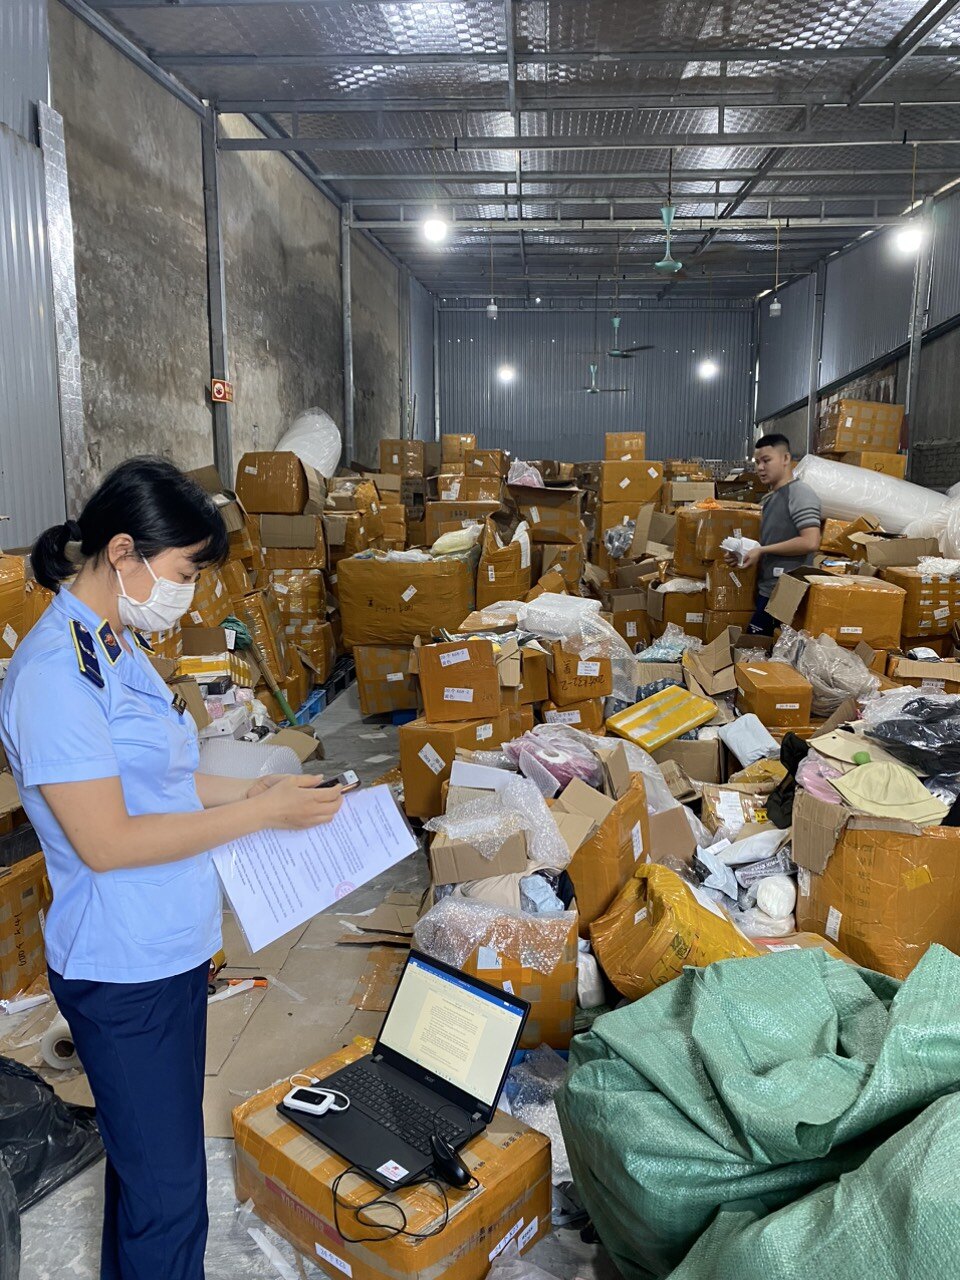 Hà Nội: Phát hiện kho hàng với hơn 28.000 sản phẩm hàng hóa nhập lậu